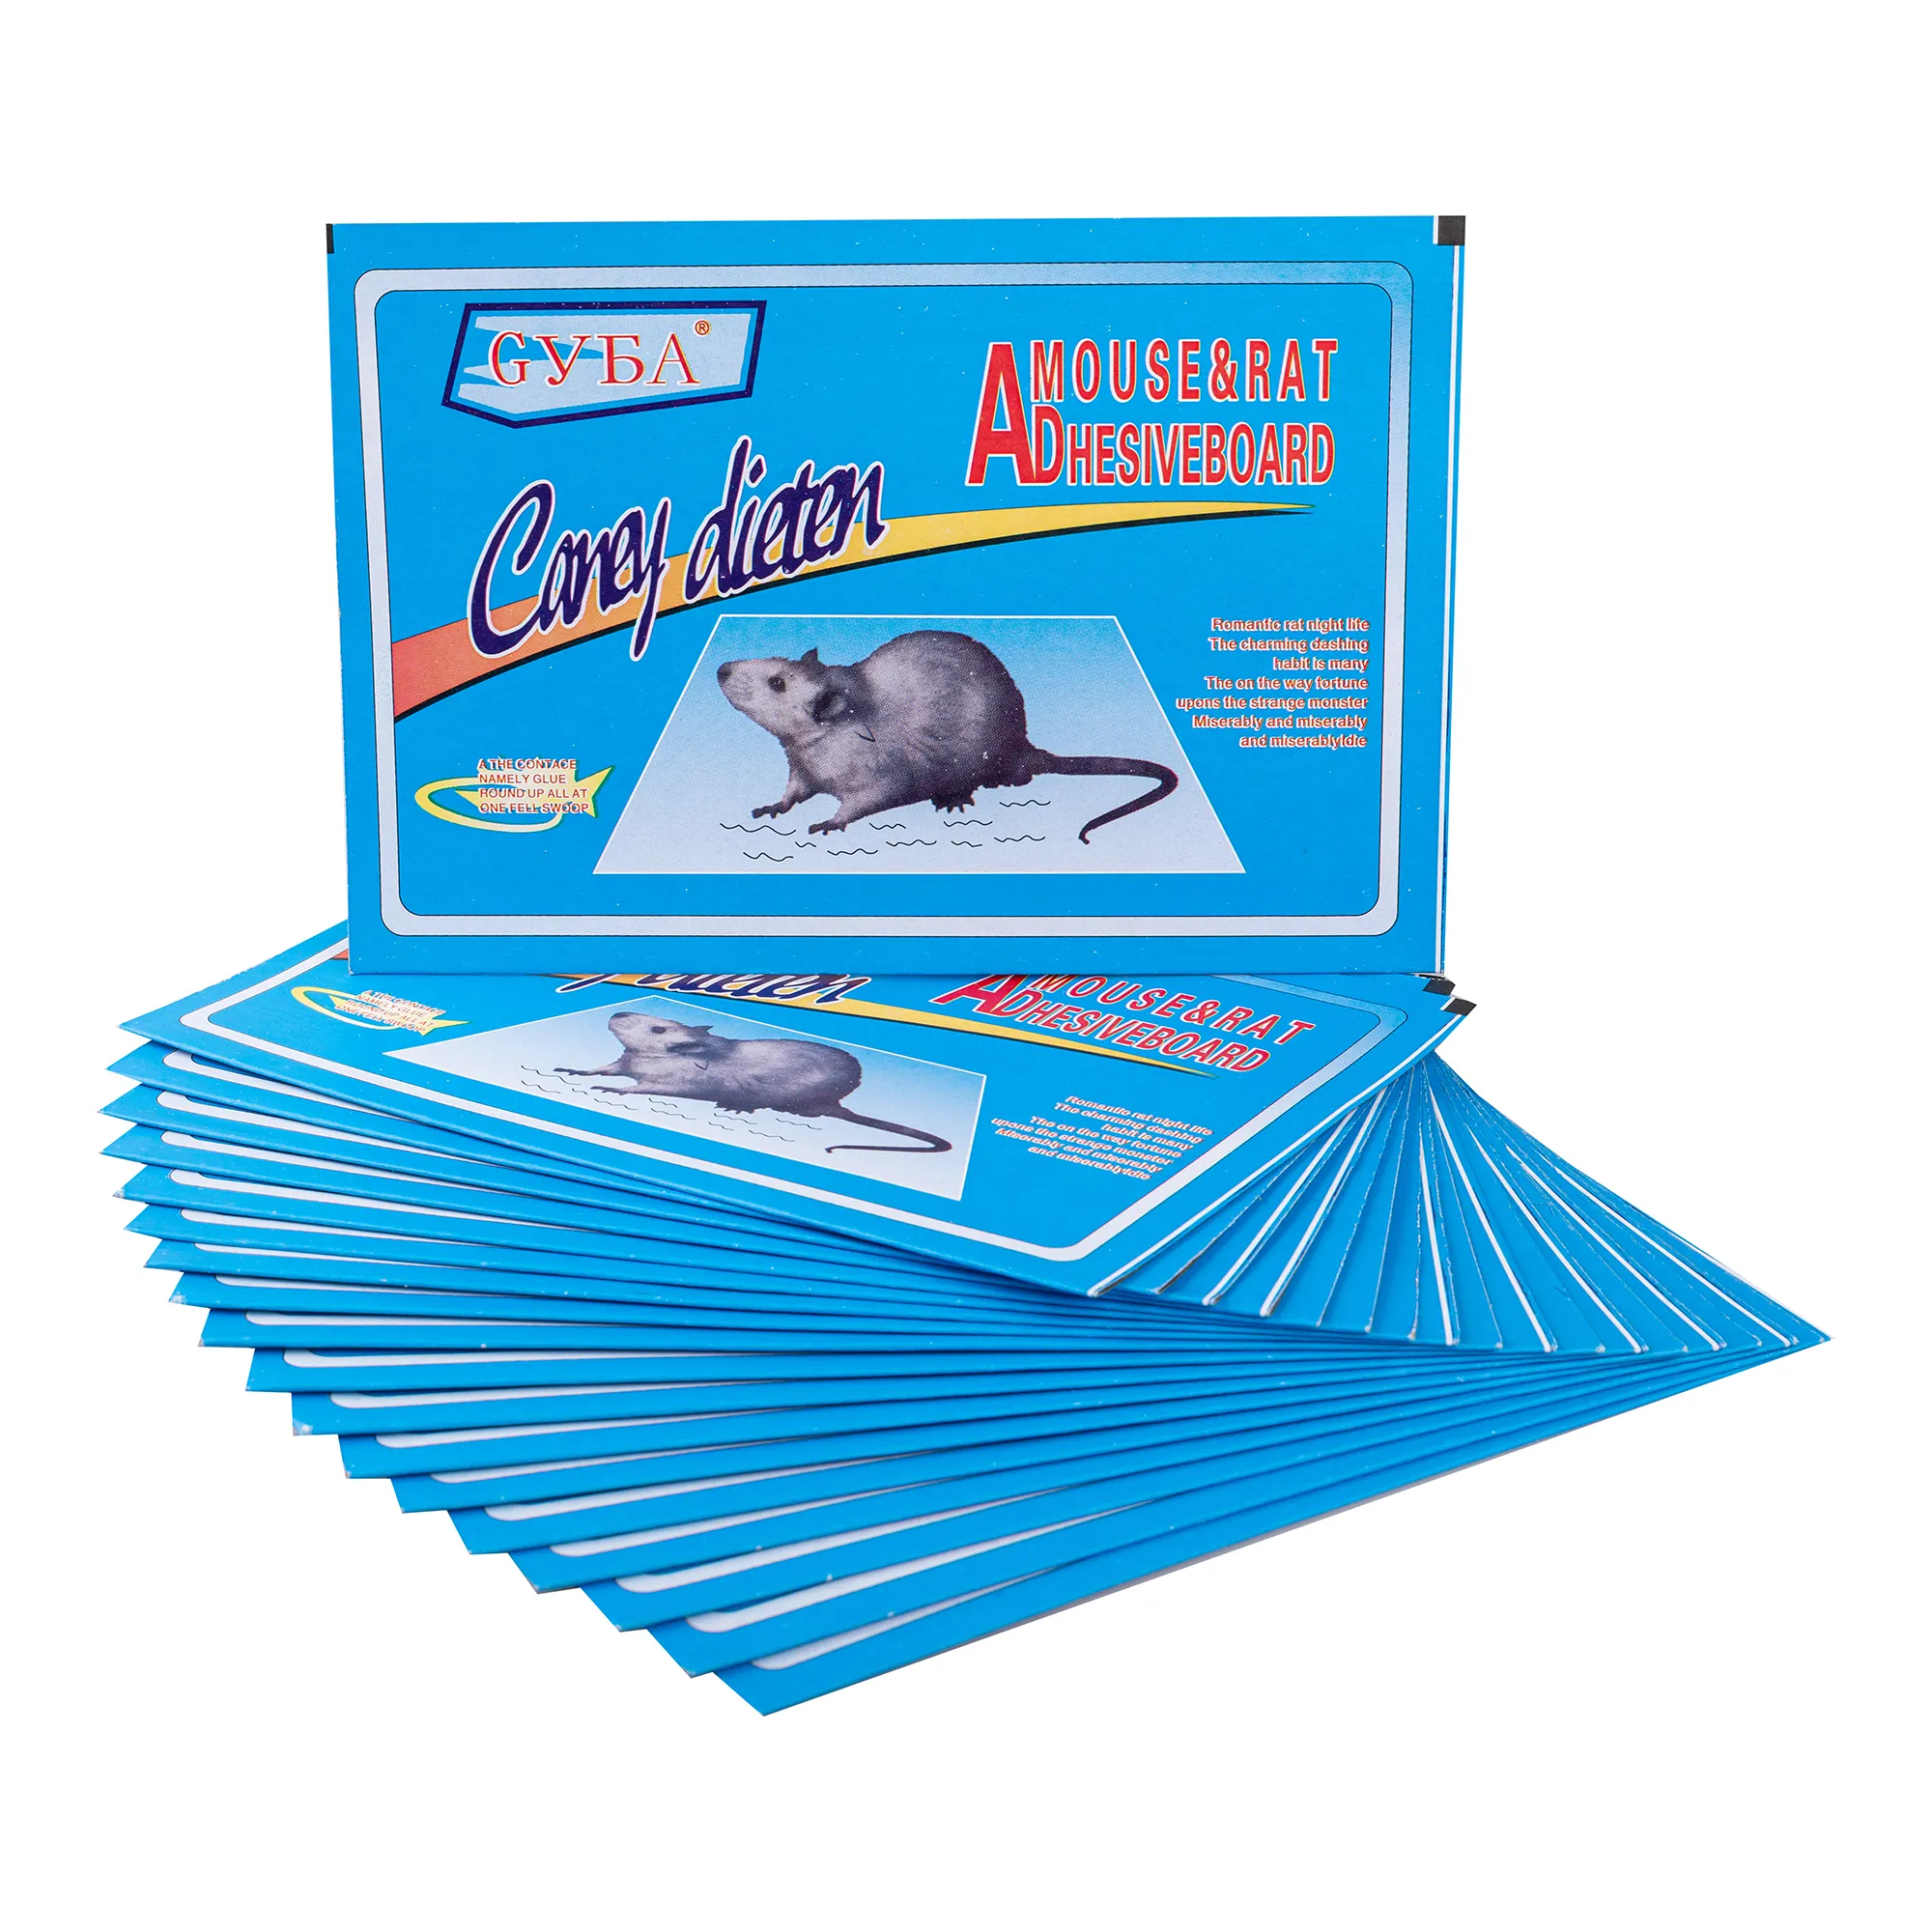 Los fabricantes de ndoor producen y suministra pegatinas adhesivas ultra fuertes para matar ratas